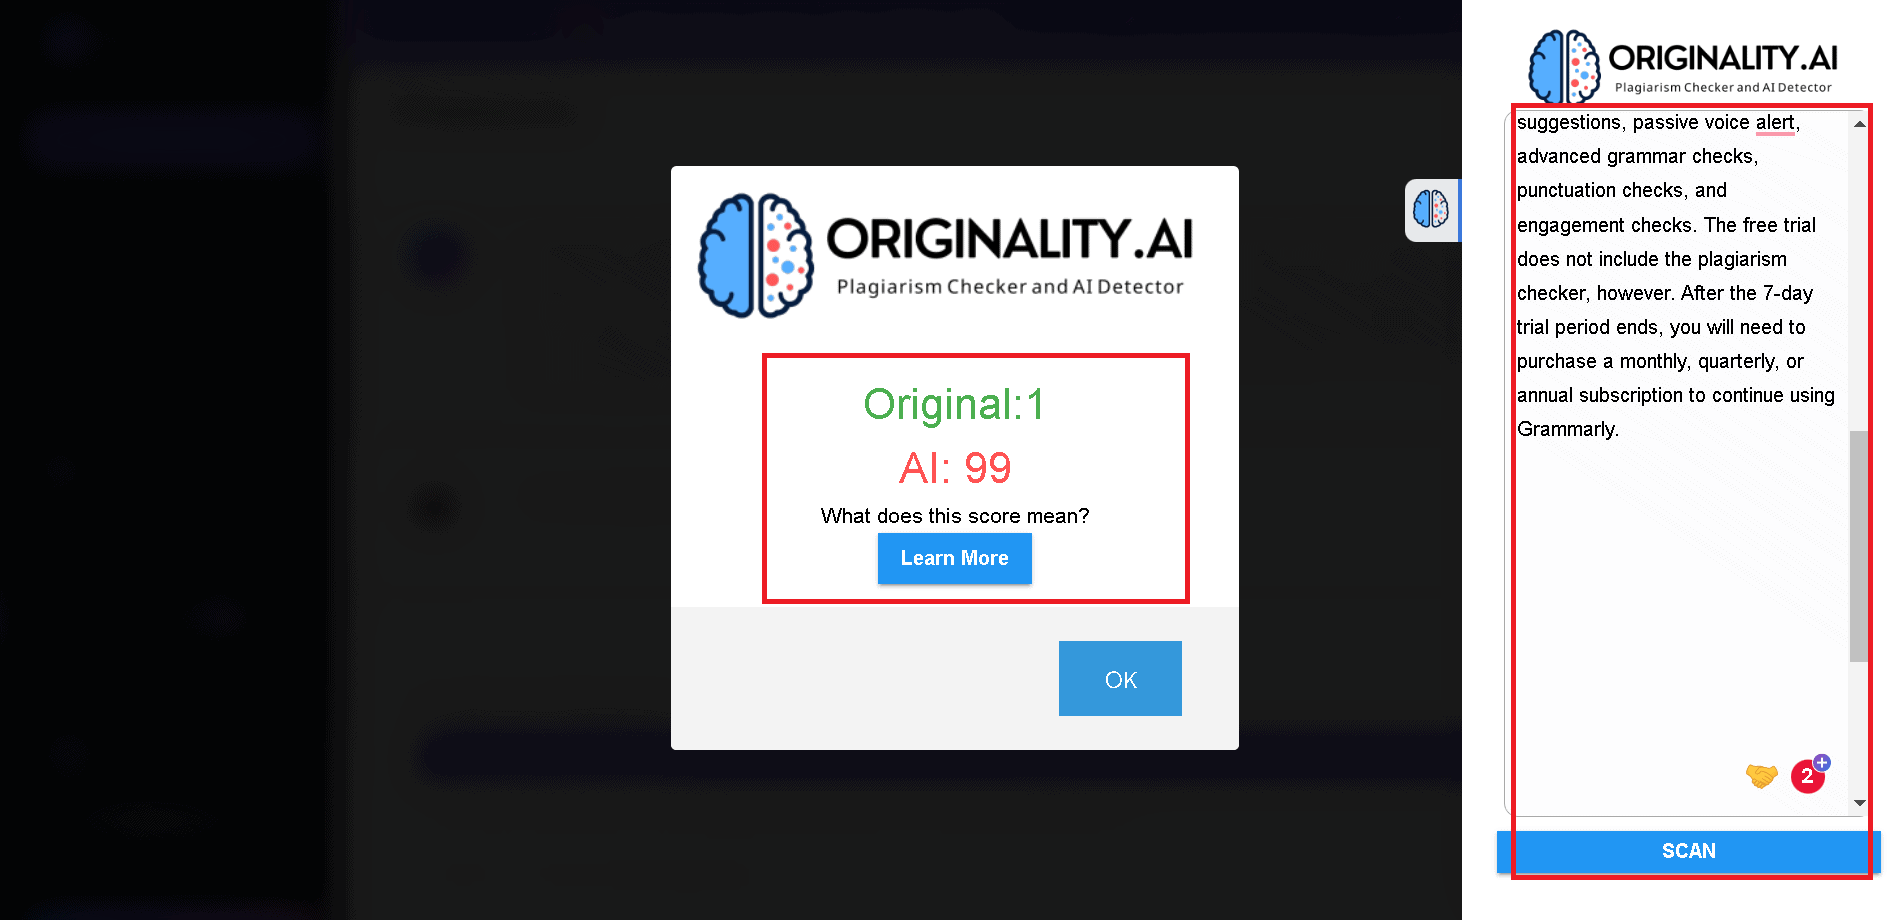 Originality-ai tool can detect AI content